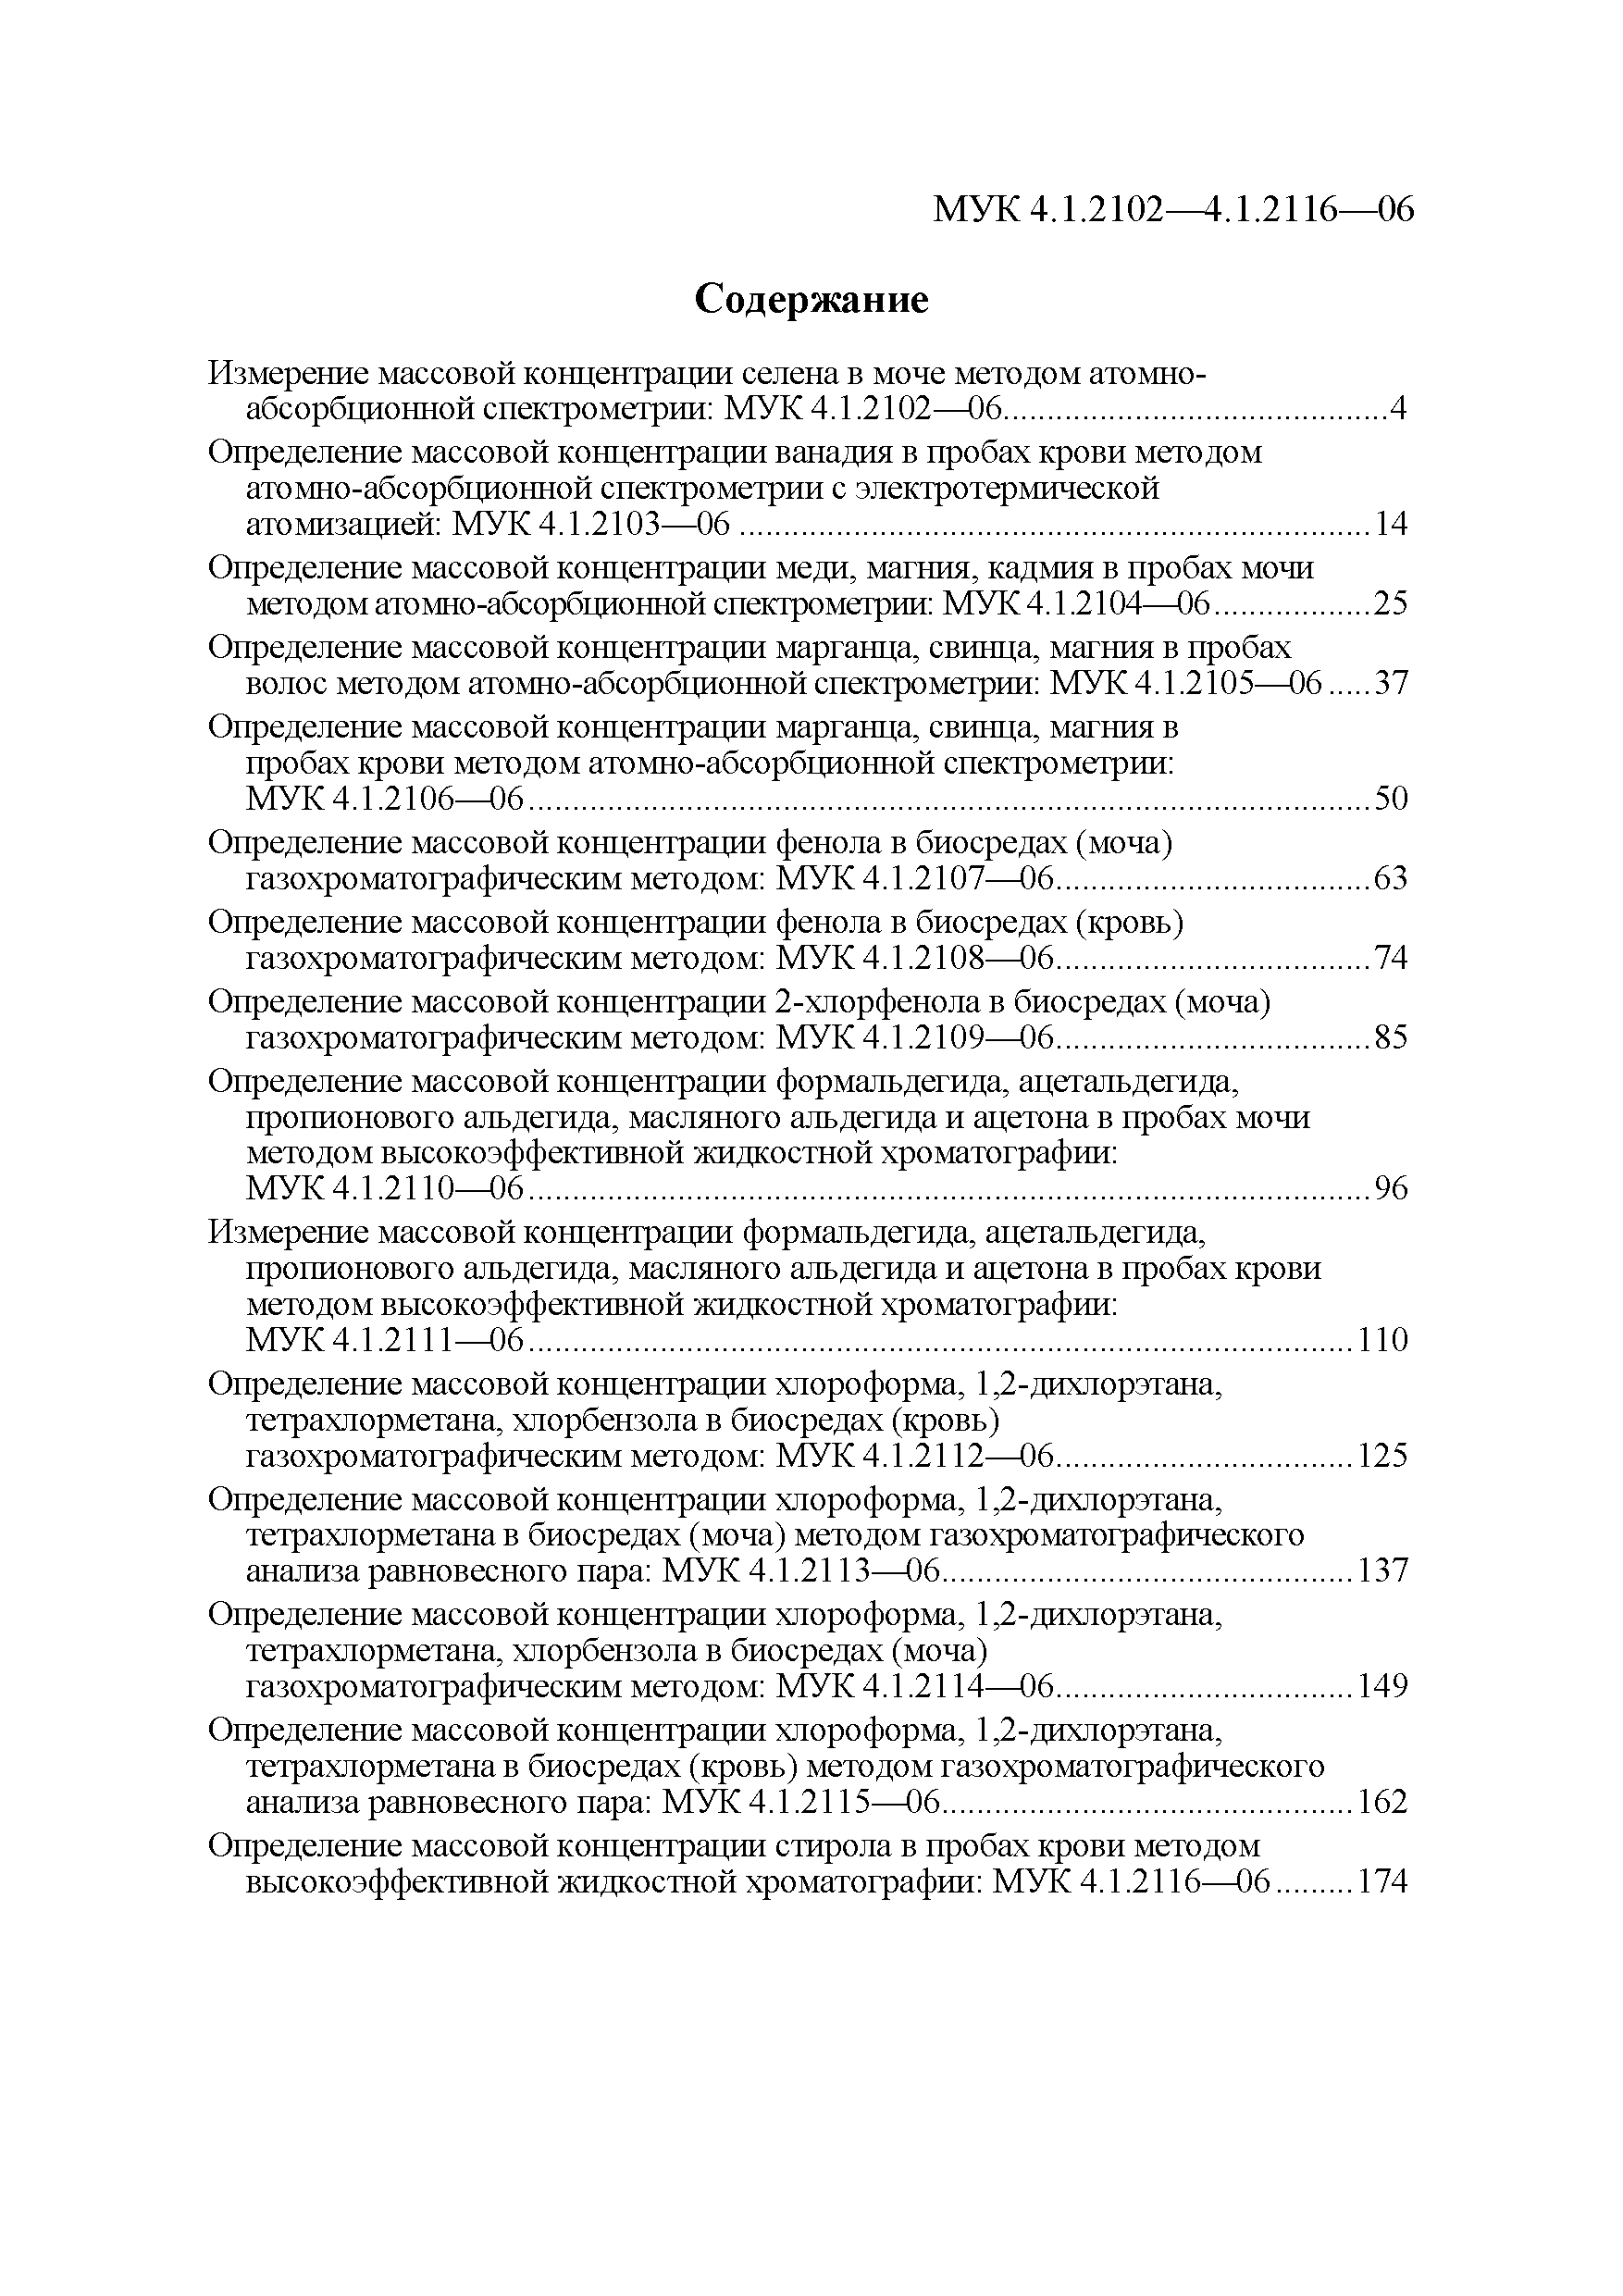 МУК 4.1.2115-06